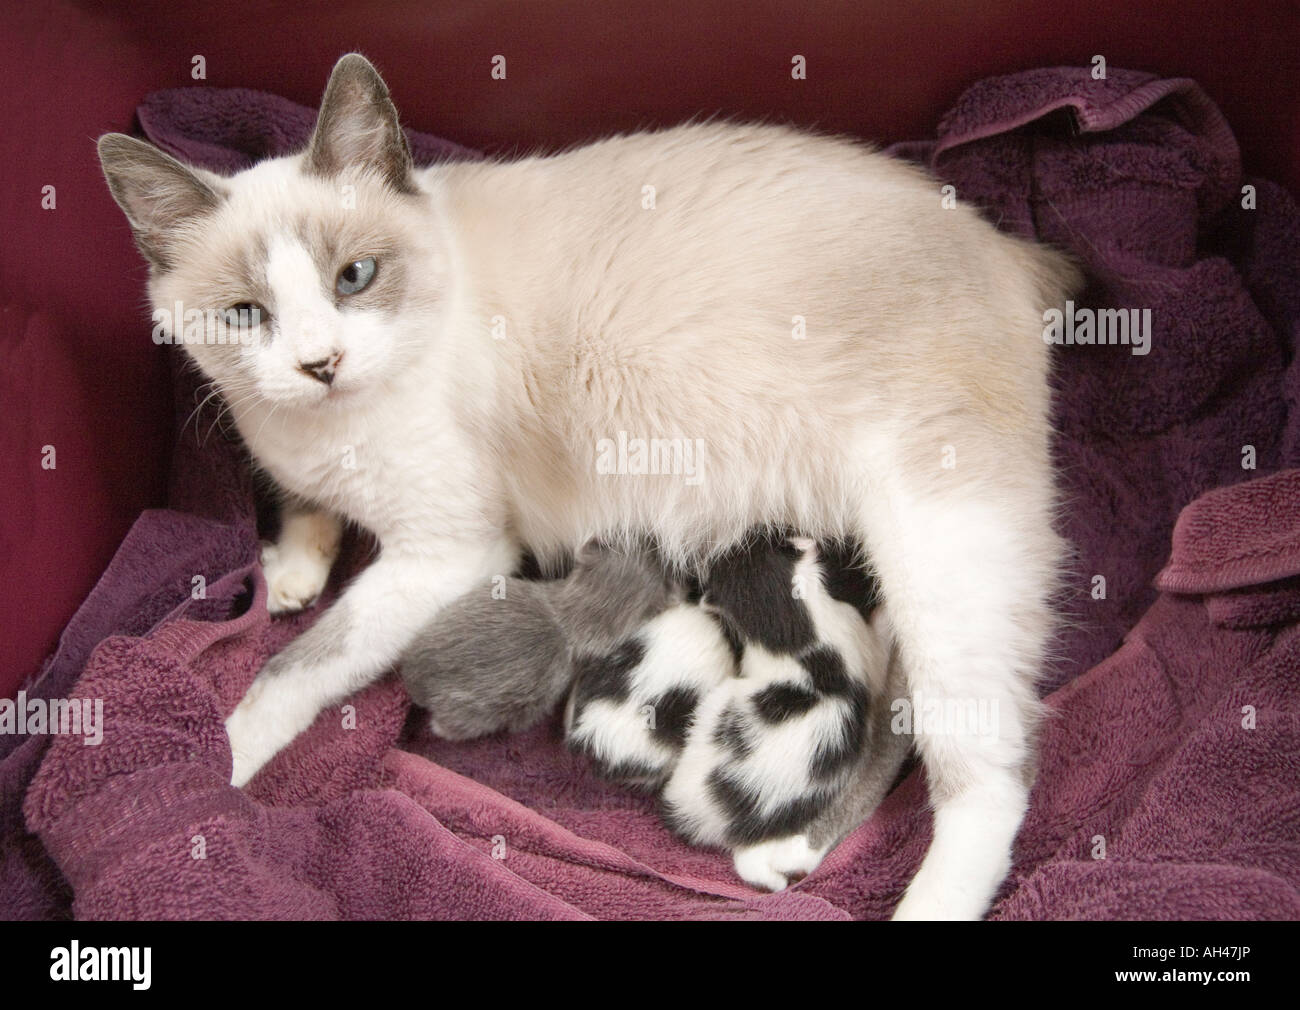 Una madre gatto teneramente infermieri i suoi tre i gattini appena nati. Lei e due dei suoi cuccioli sono Manx, avente senza code. Foto Stock